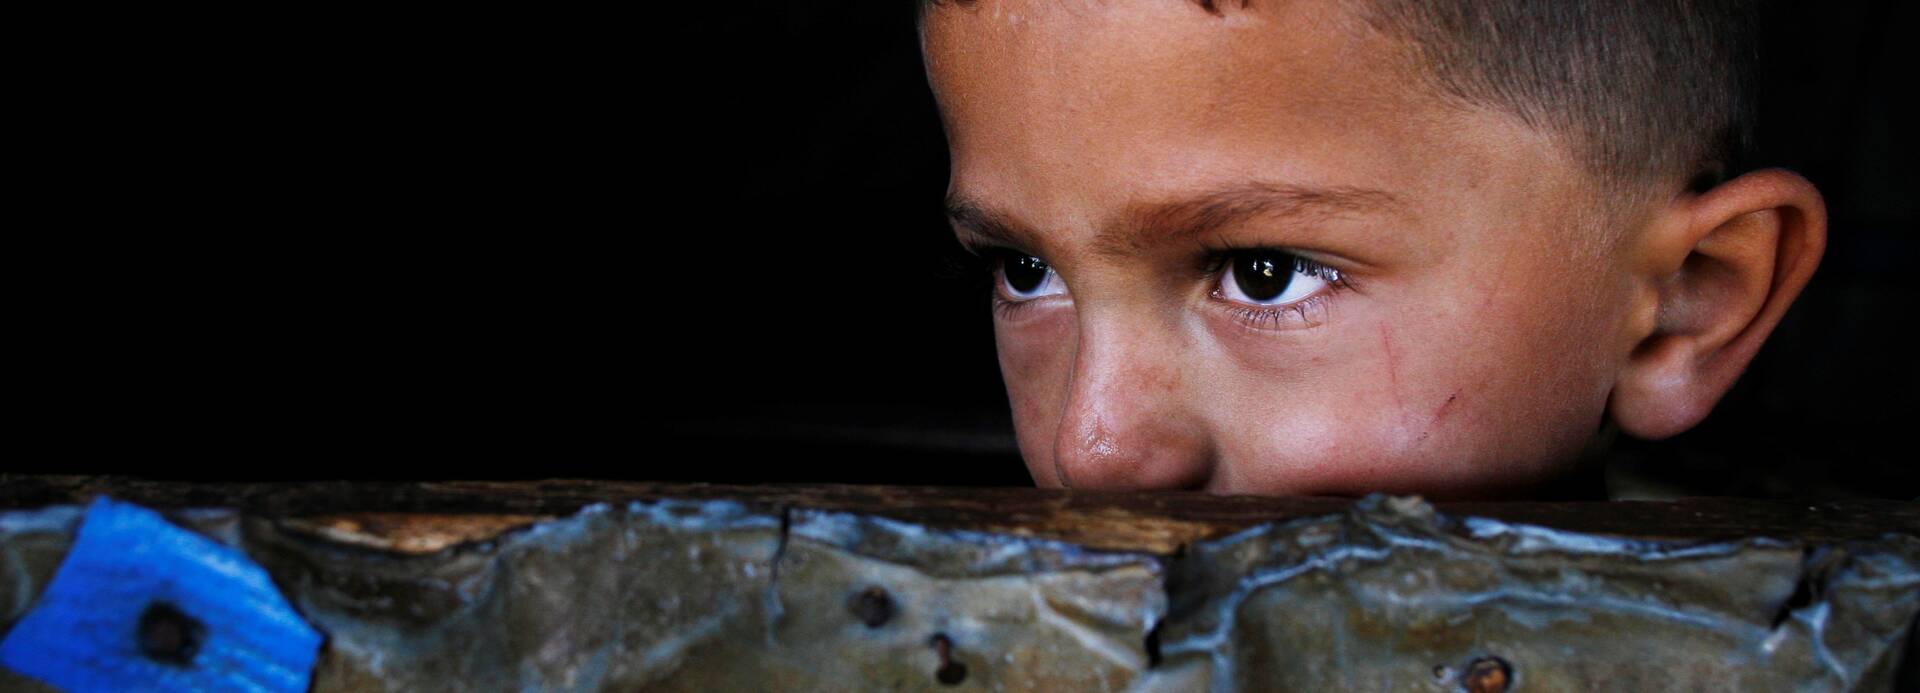 Ein kleiner Junge aus dem Libanon guckt abwartend über eine Mauer